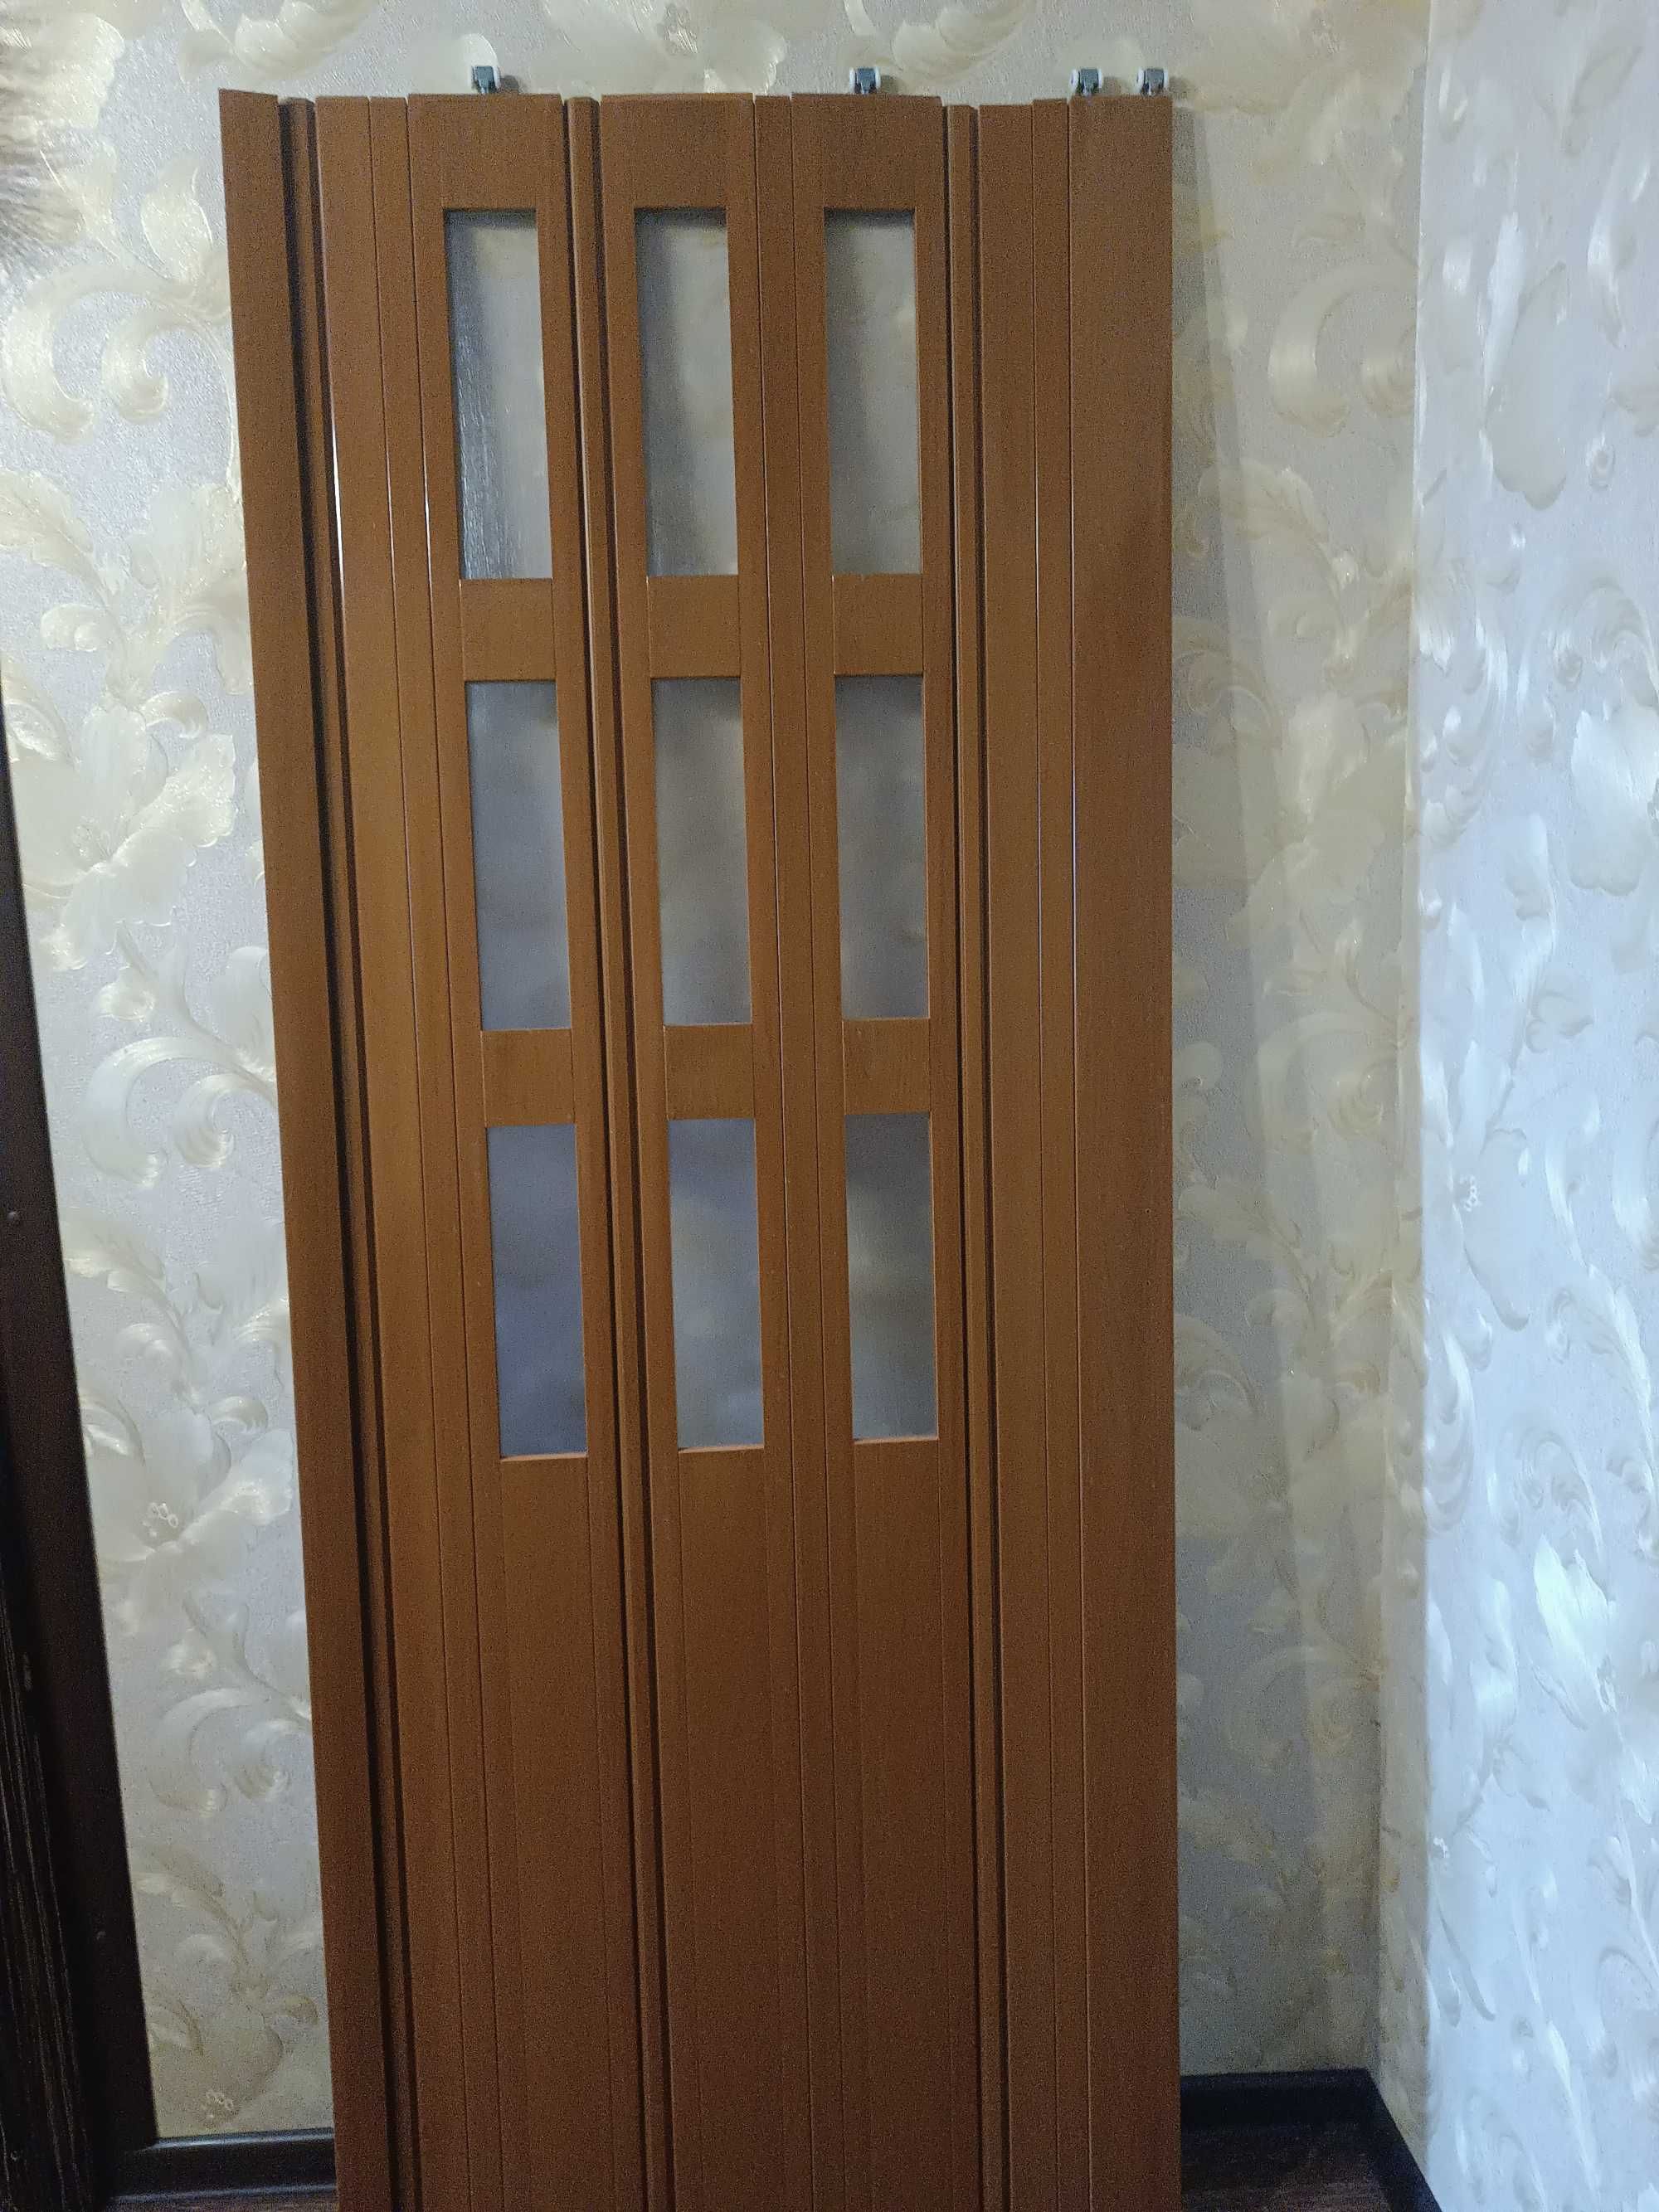 Двери межкомнатные ПВХ гармошкой с остеклением  1000 грн.шт.